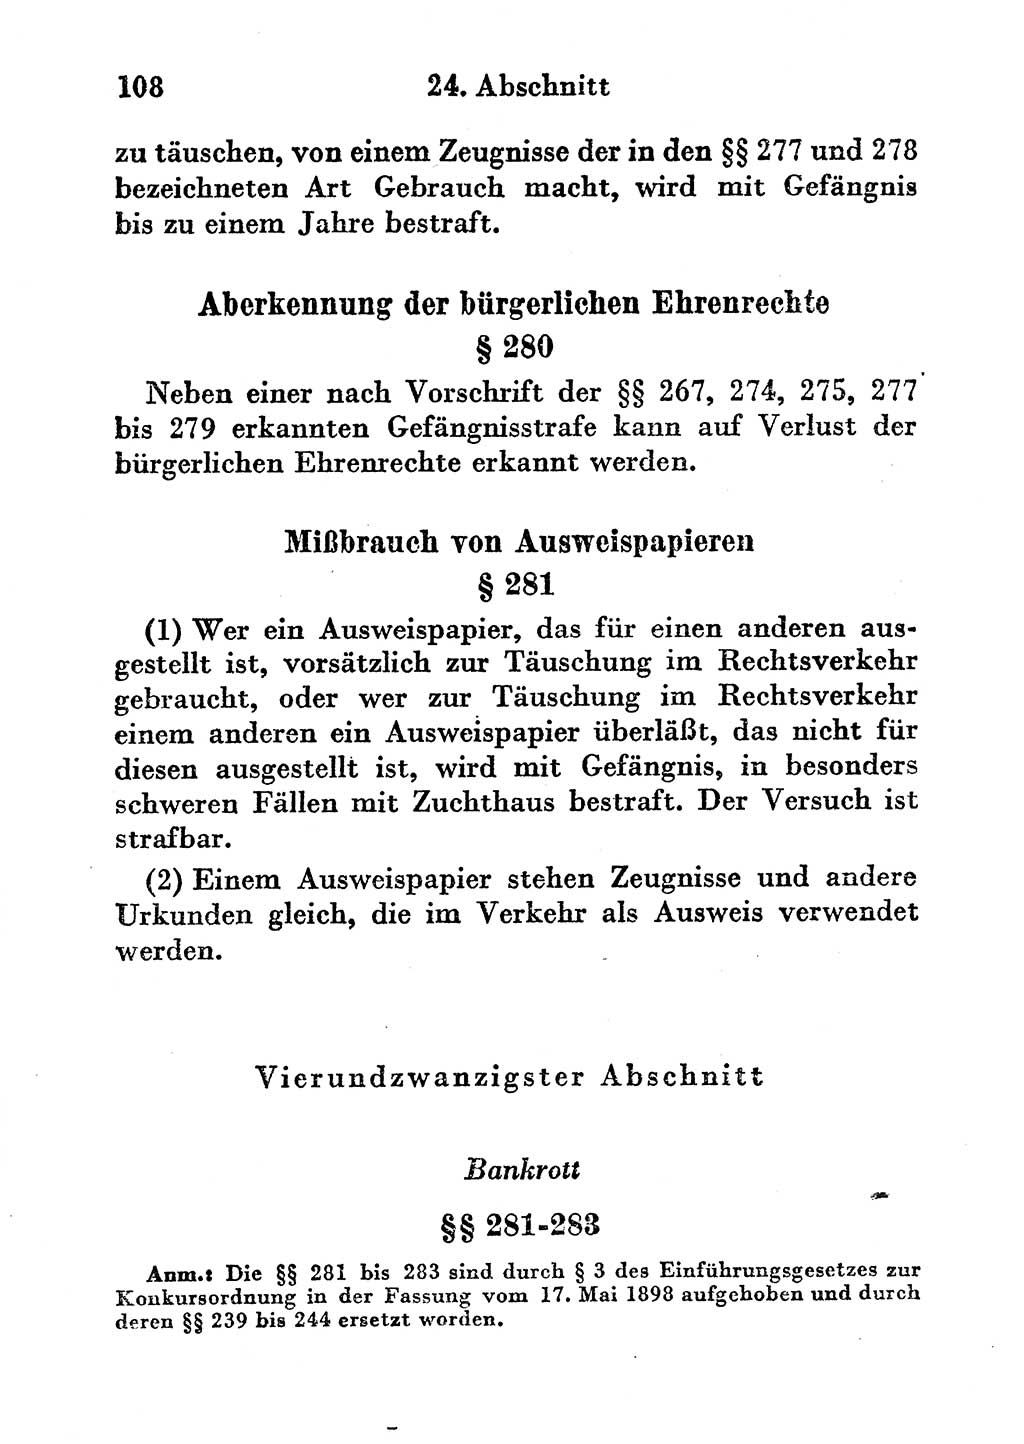 Strafgesetzbuch (StGB) und andere Strafgesetze [Deutsche Demokratische Republik (DDR)] 1956, Seite 108 (StGB Strafges. DDR 1956, S. 108)